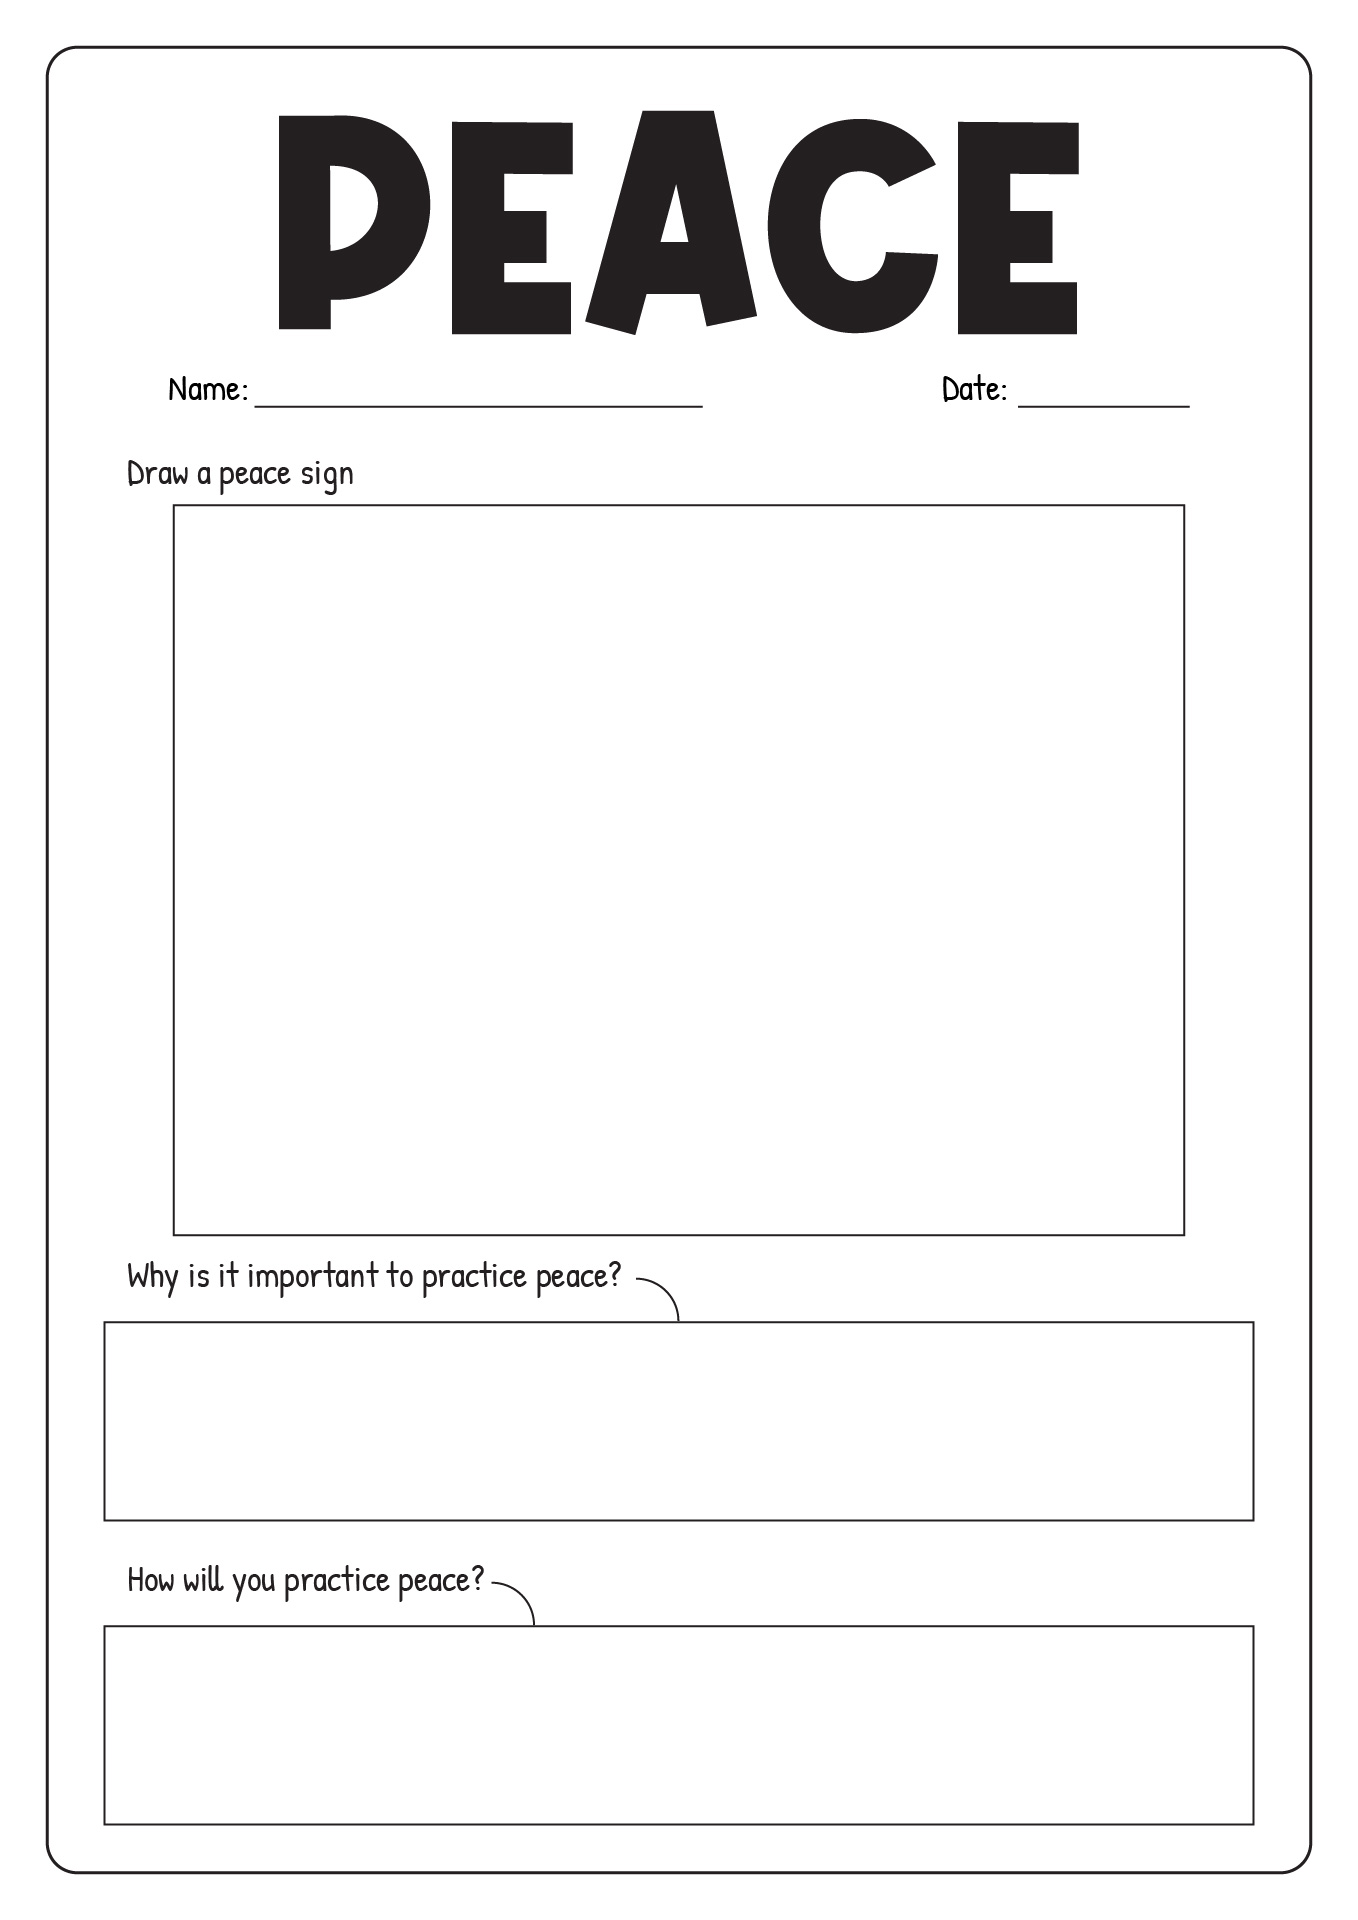 Worksheet On Peace in School Image